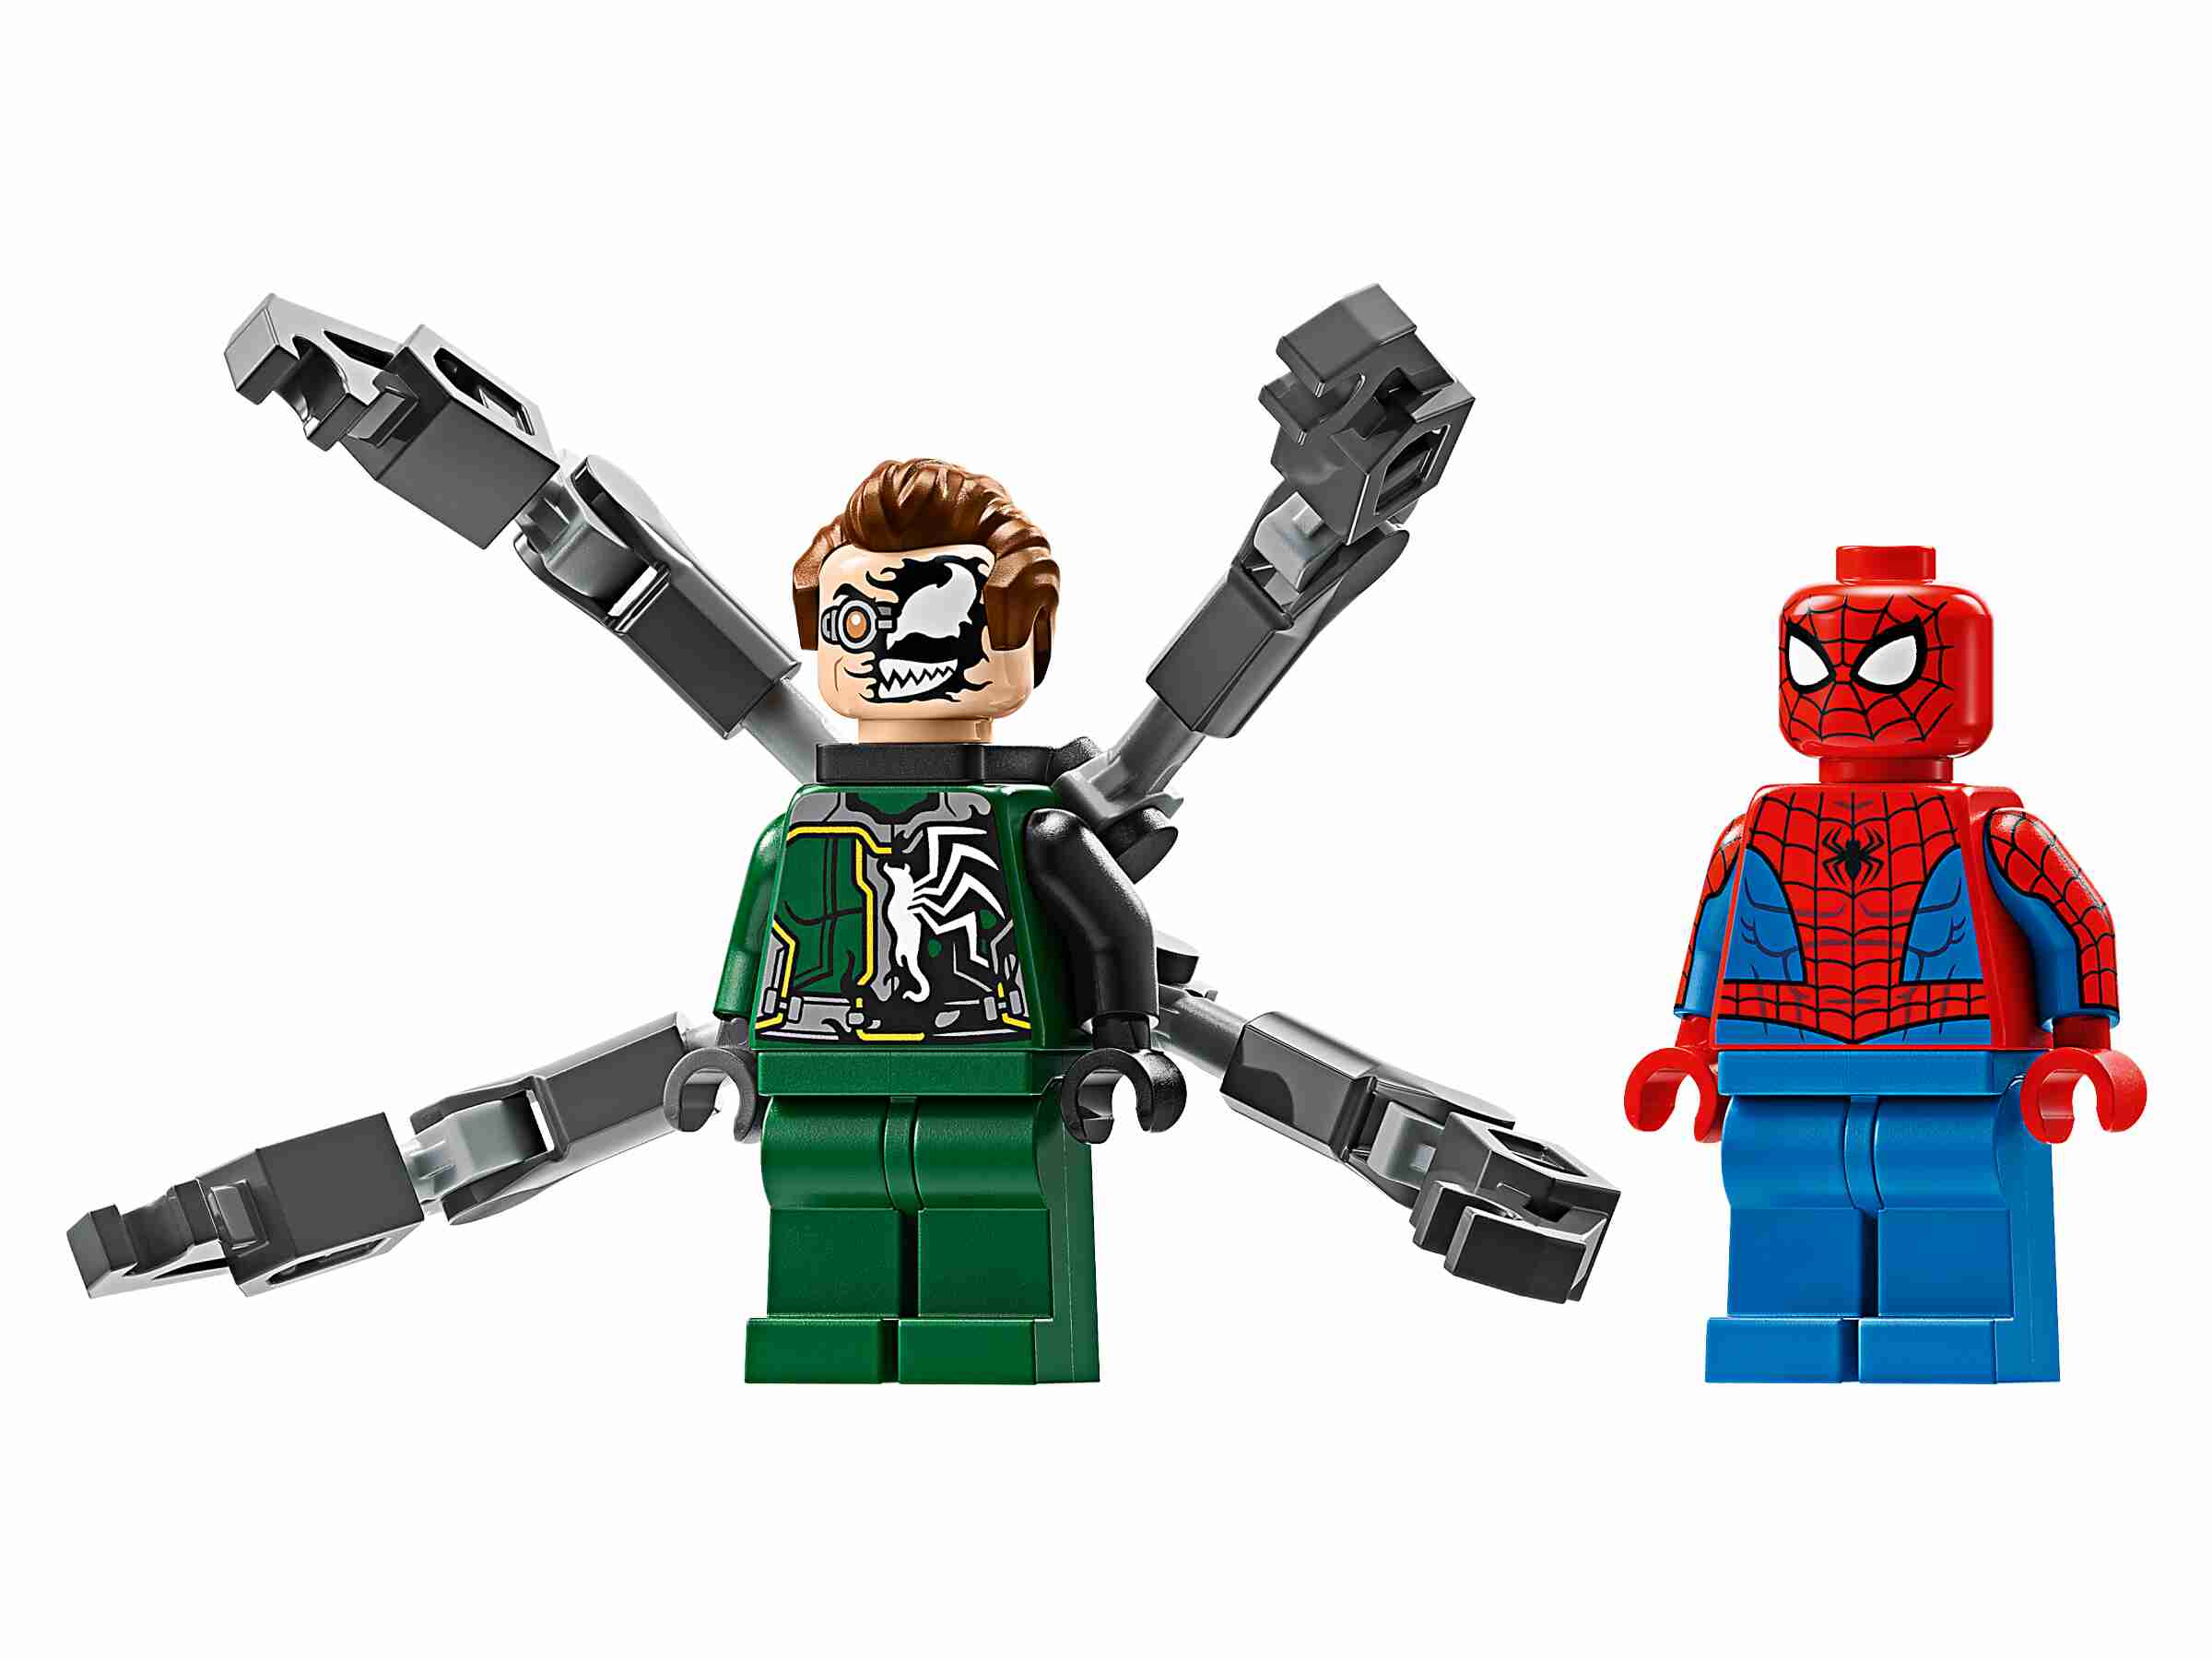 LEGO 76275 Marvel Motorrad-Verfolgungsjagd: Spider-Man vs. Doc Ock